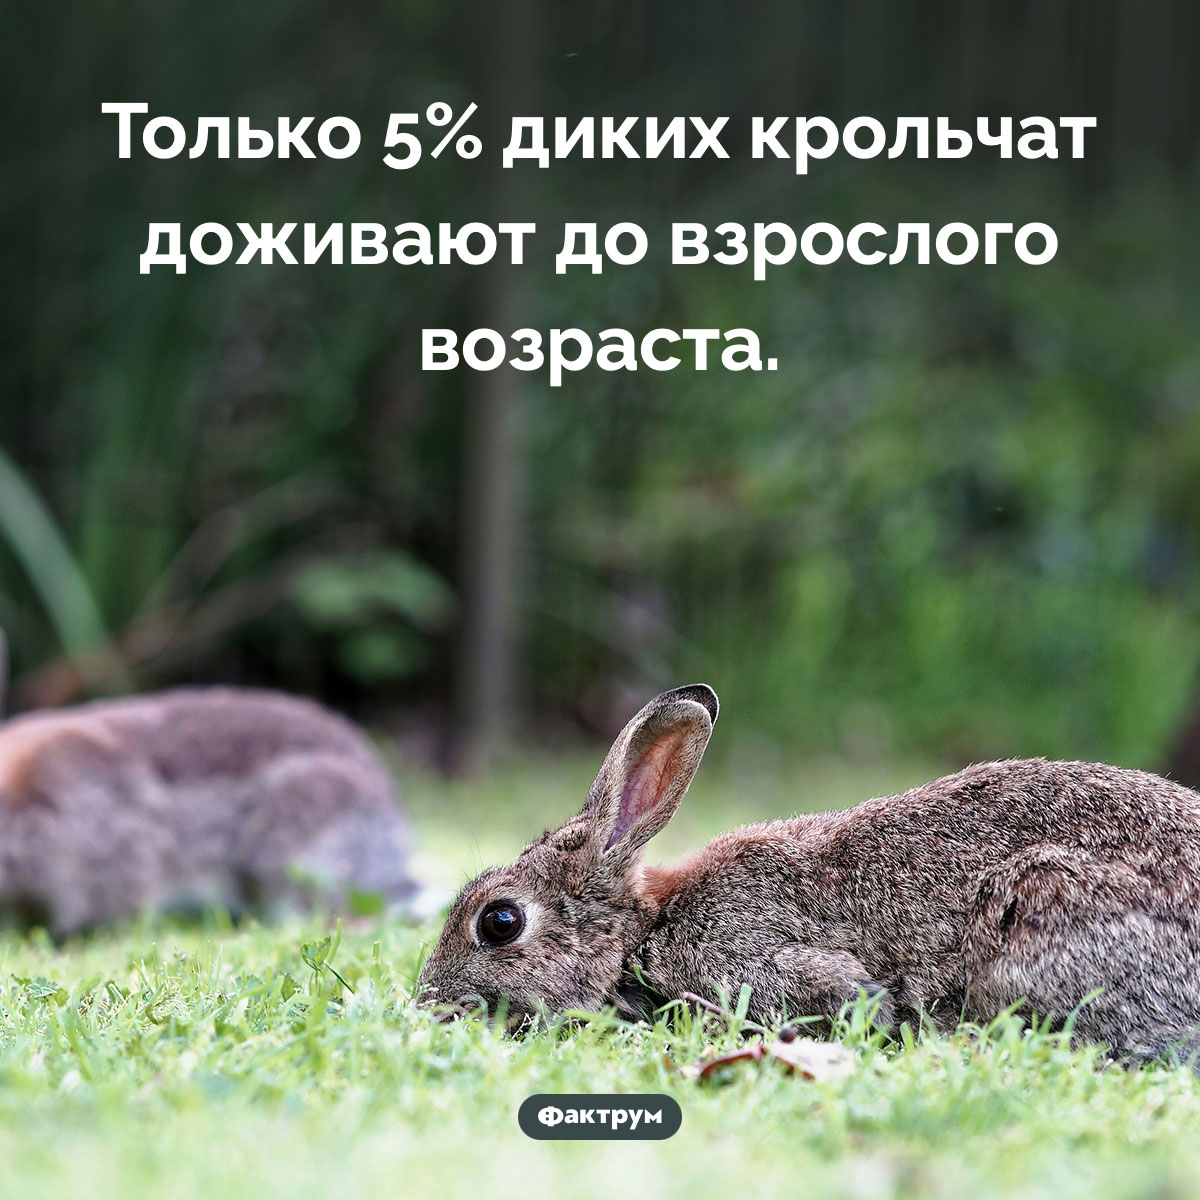 Почти все дикие крольчата погибают. Только 5% диких крольчат доживают до взрослого возраста.